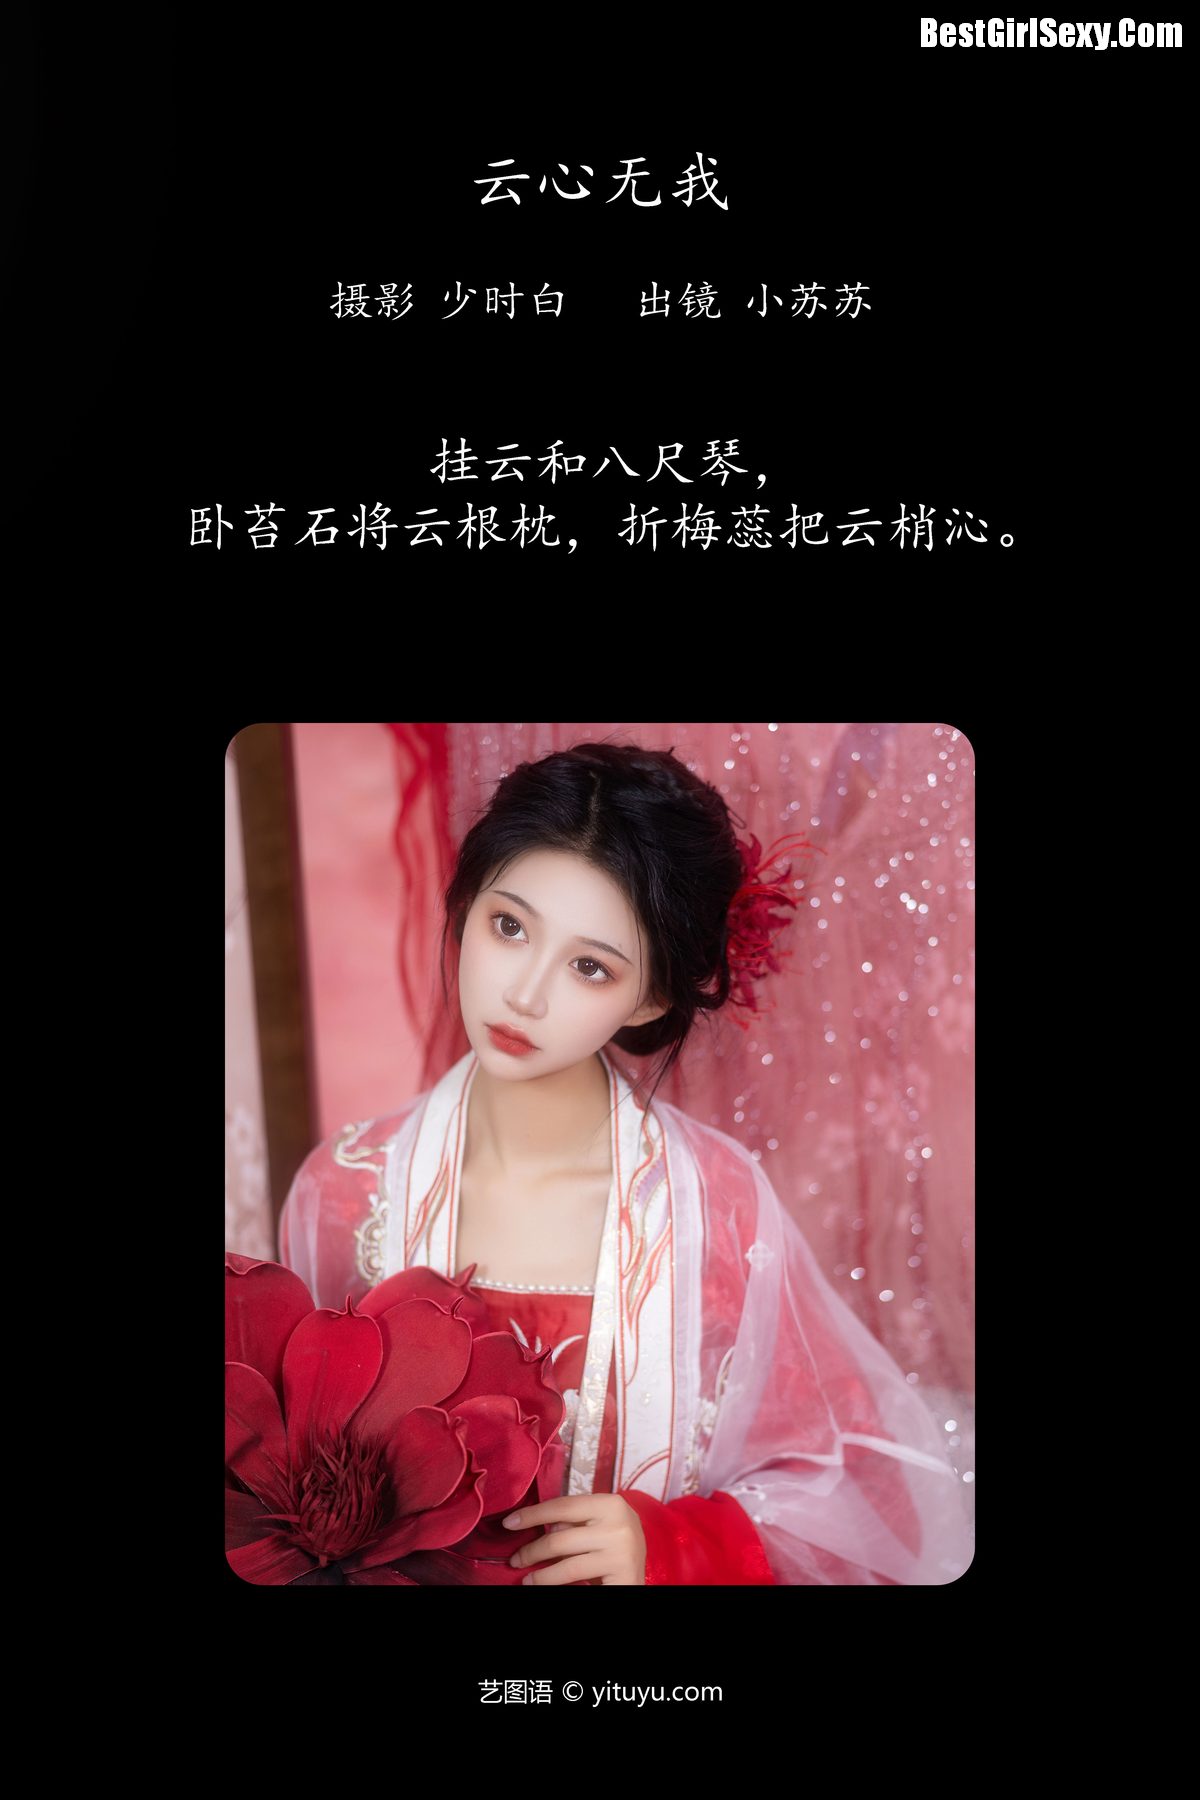 YiTuYu艺图语 Vol 4080 Qi Luo Sheng De Xiao Su Su 0002 2548387656.jpg